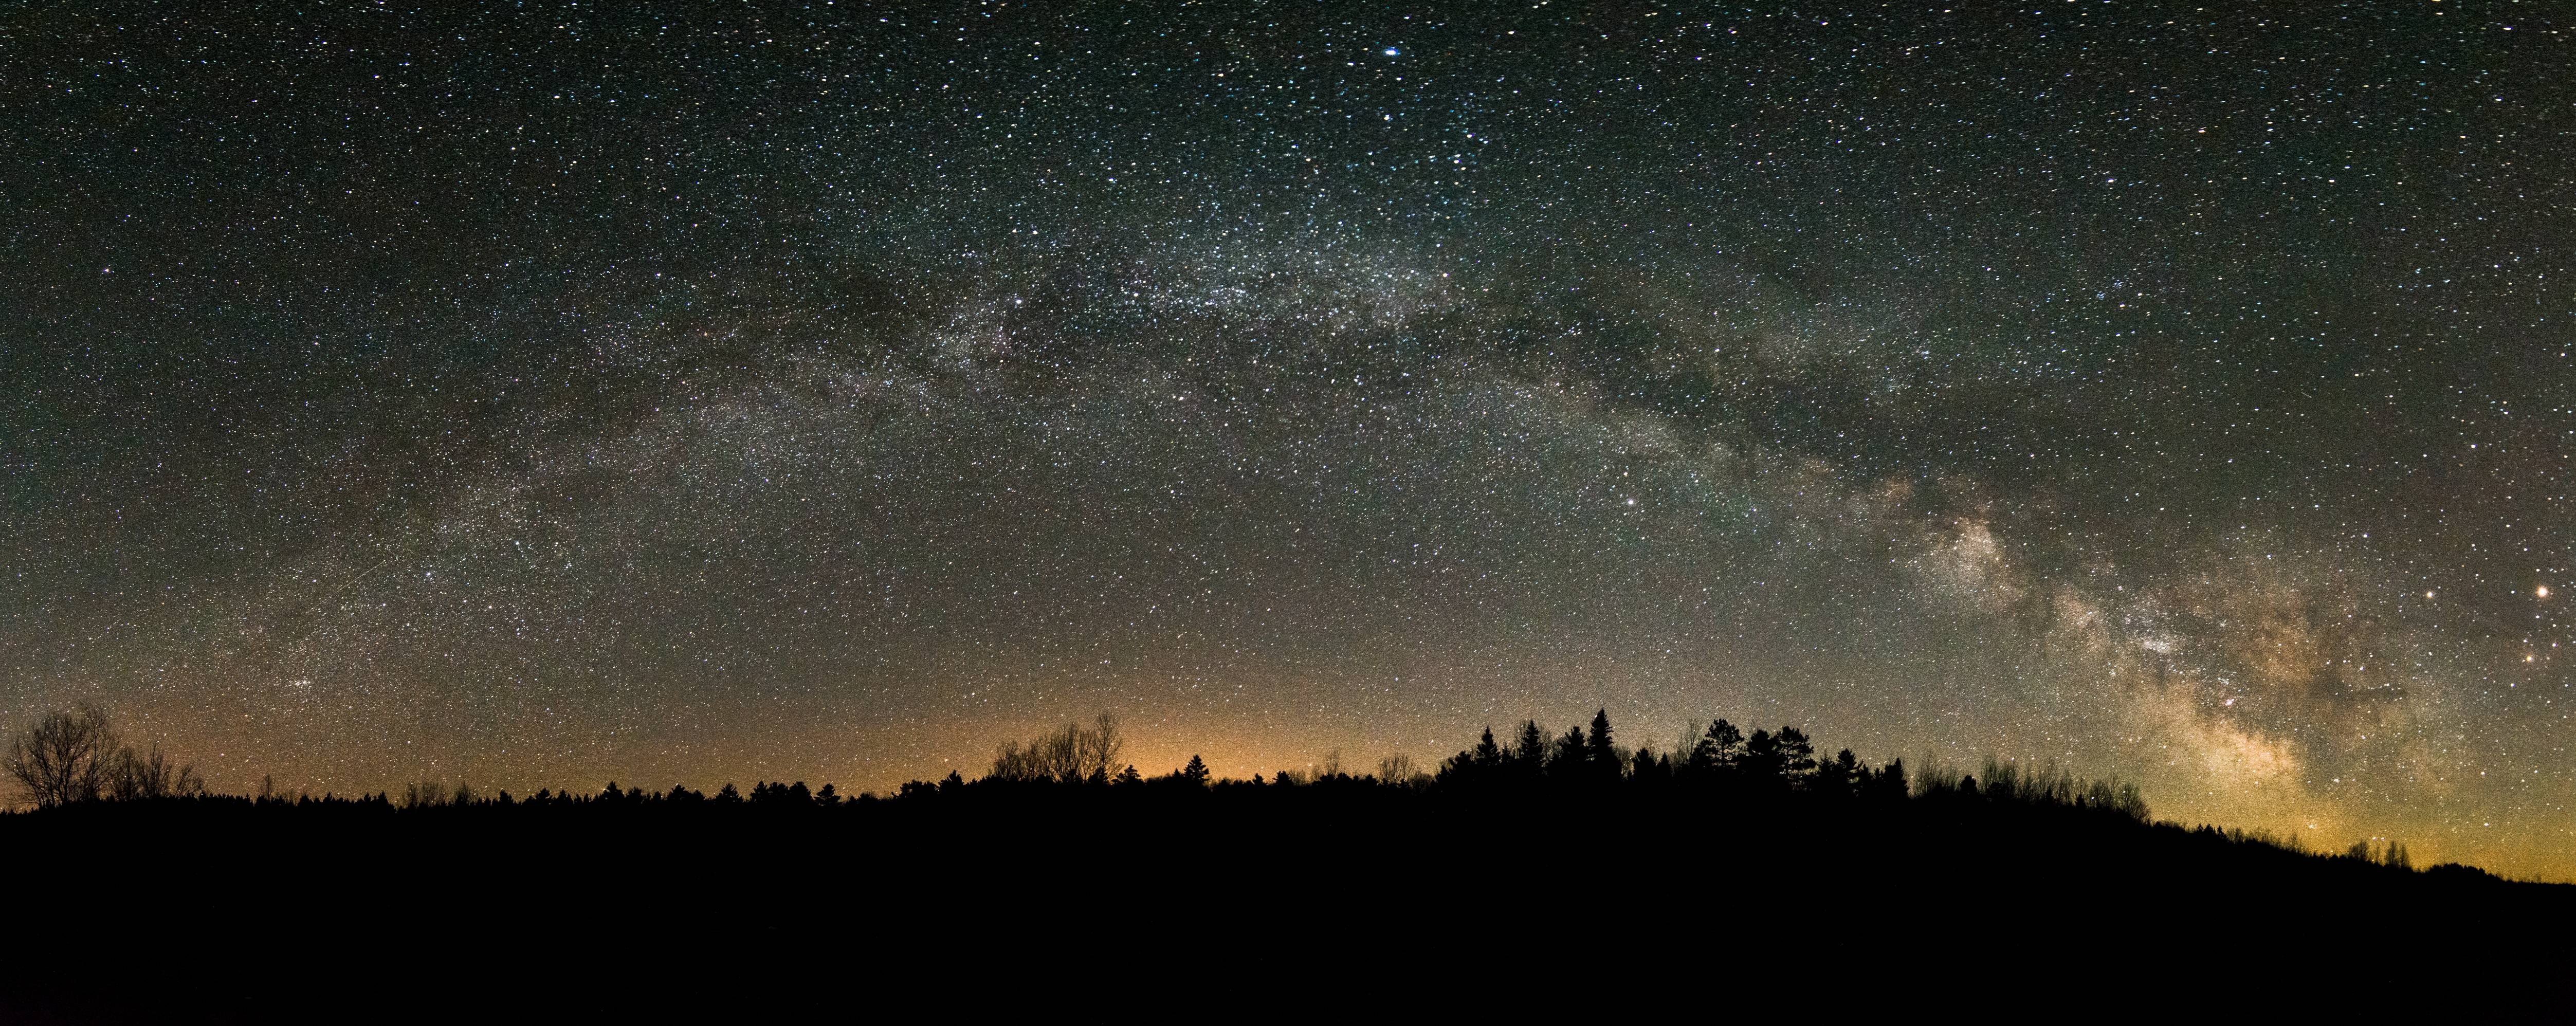 Galaxy Stars Space Canada Night Milky Way Panorama Lake Ontario 5011x1996